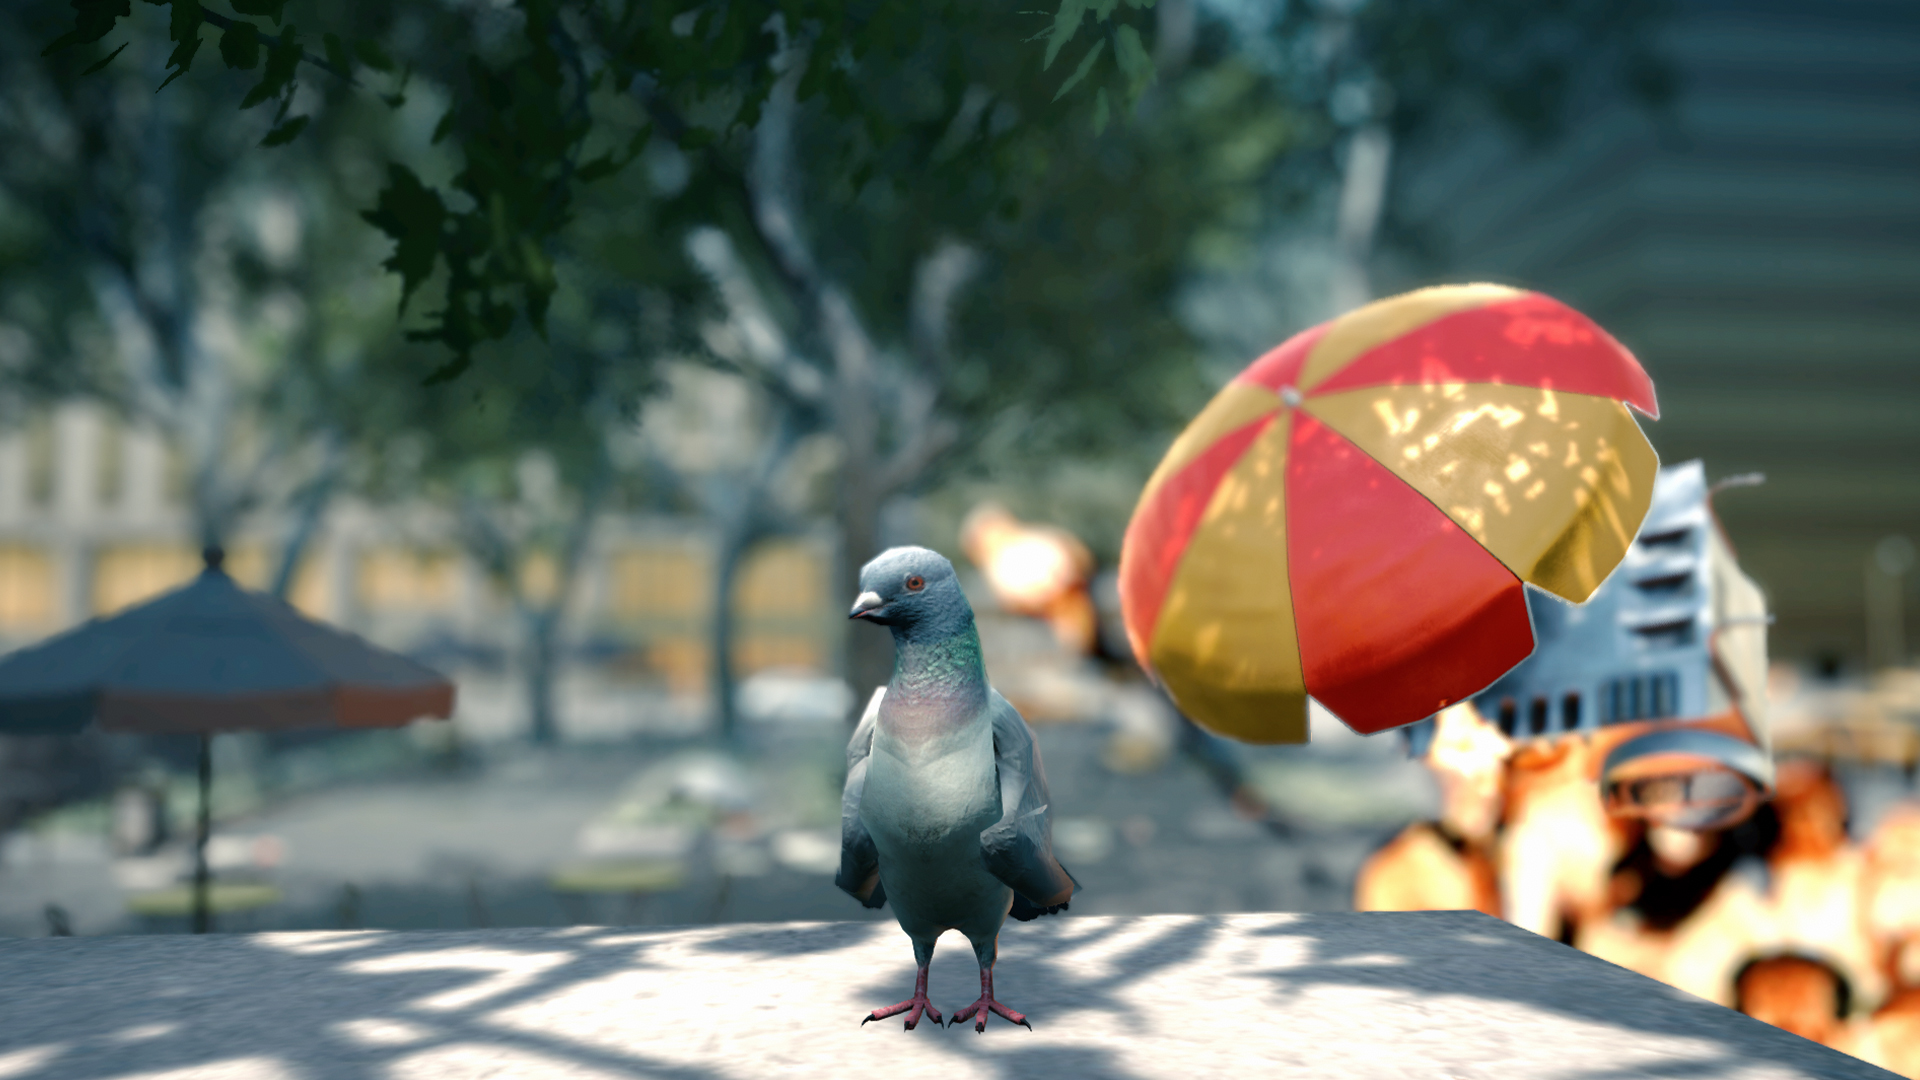 Pigeon Simulator on Steam